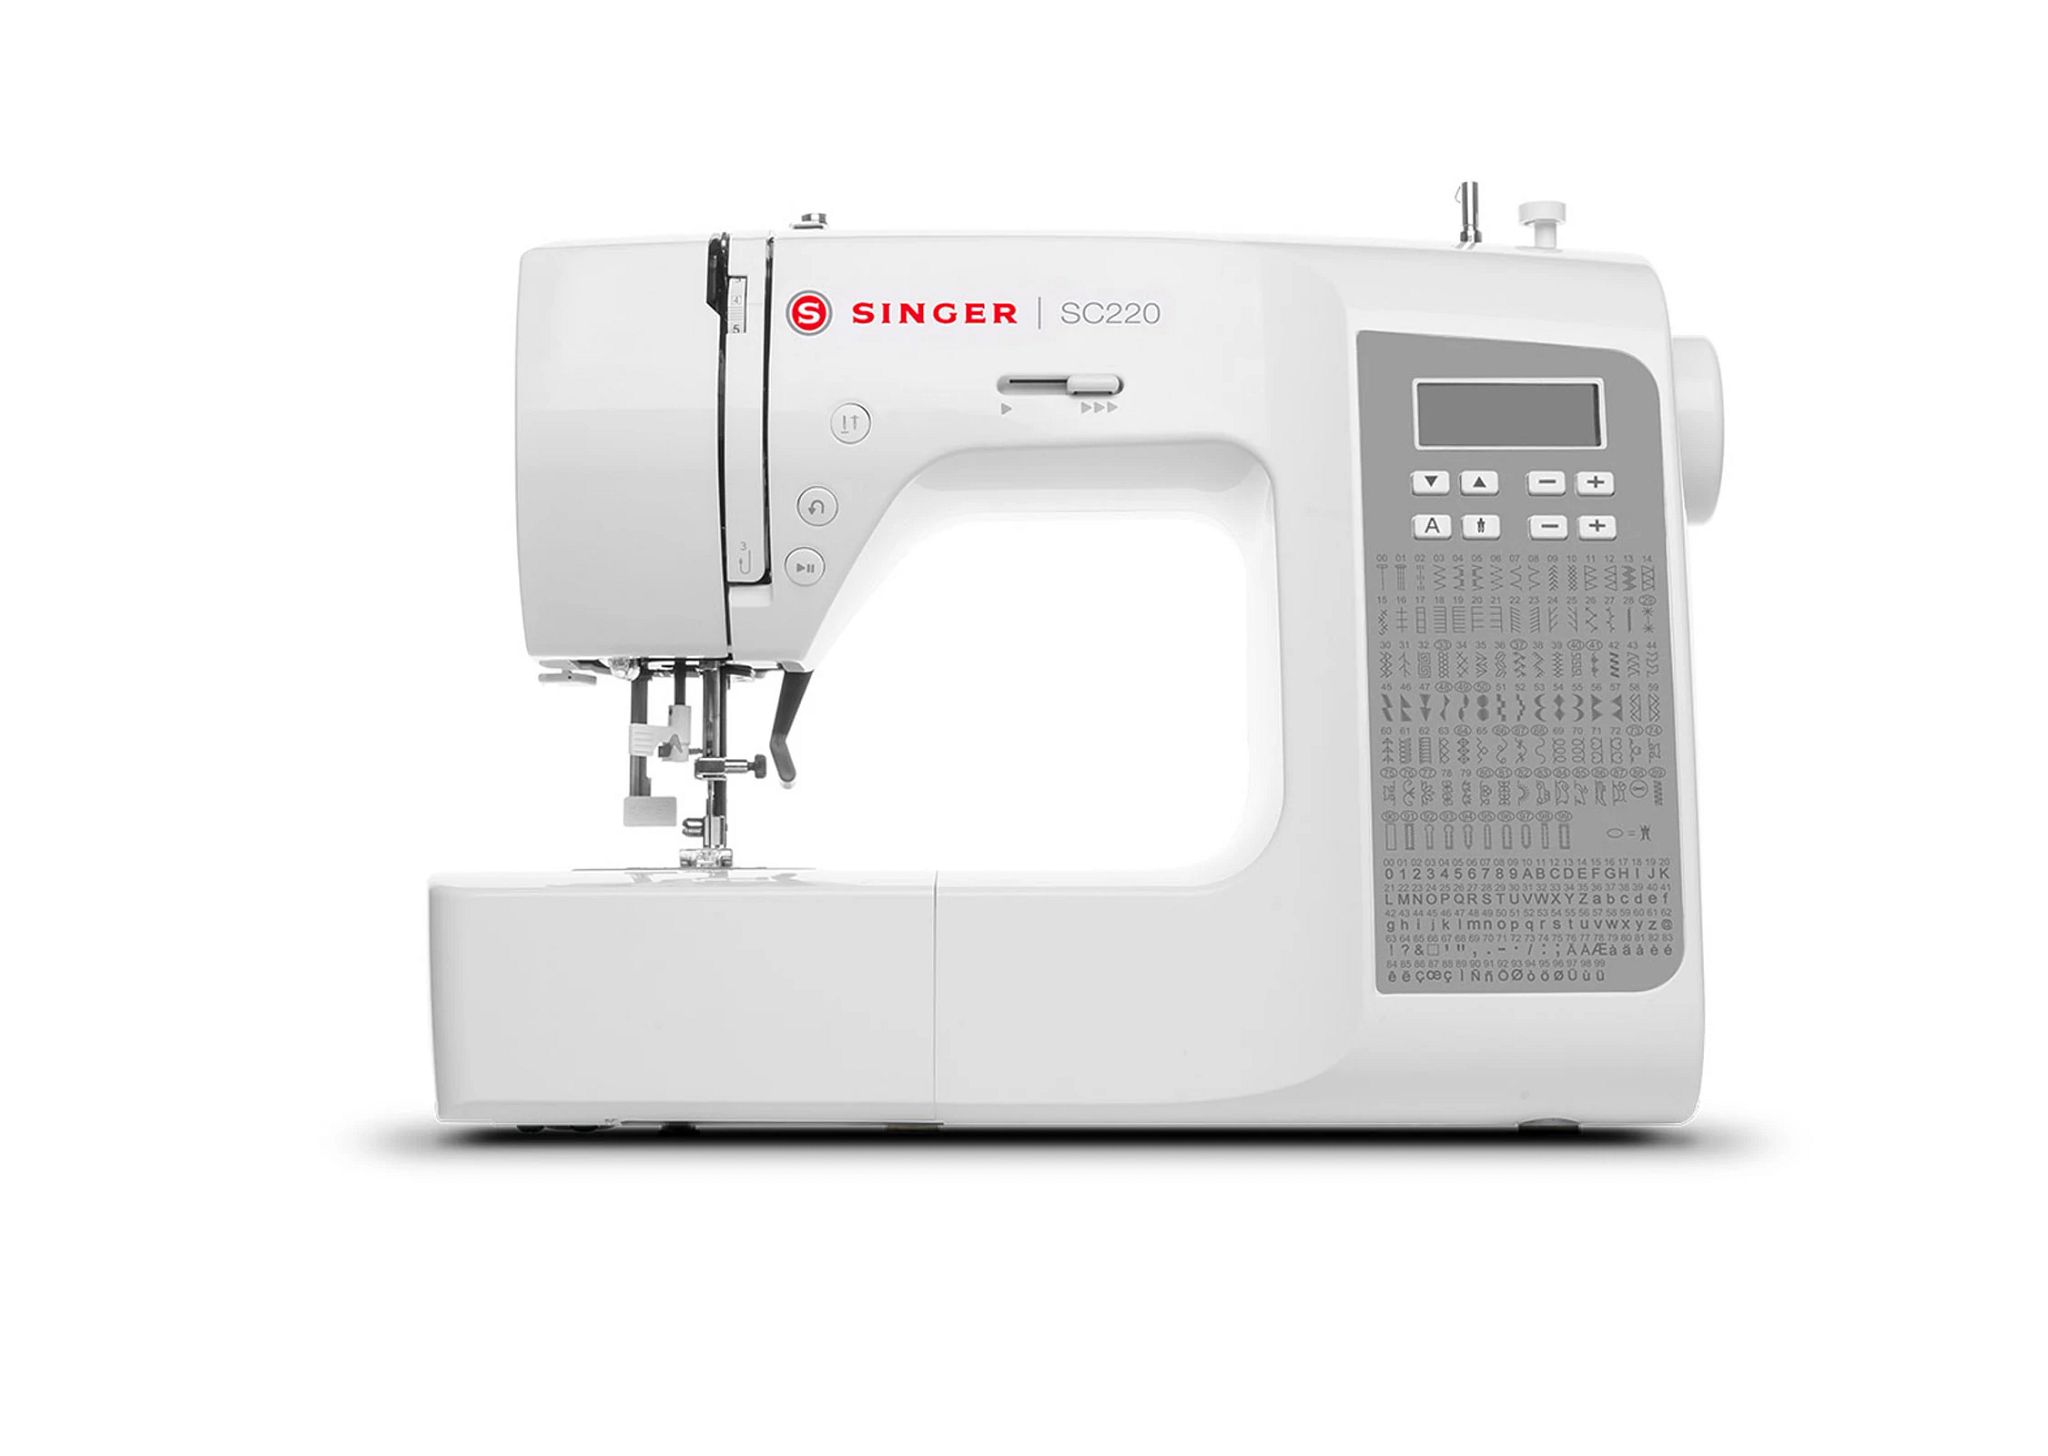 sc220 singer sewing machine